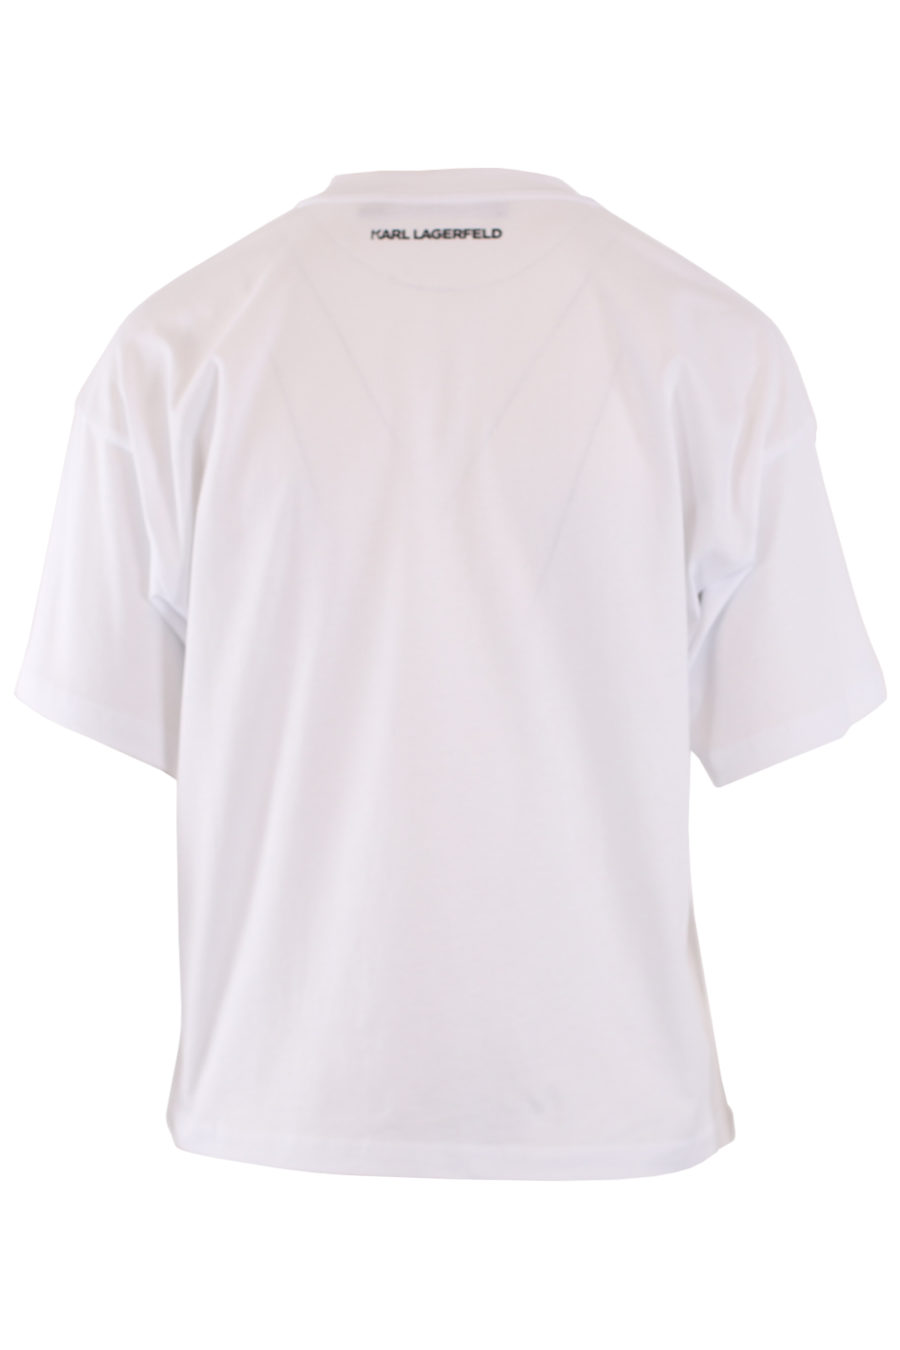 White T-shirt with velvet logo - IMG 8969